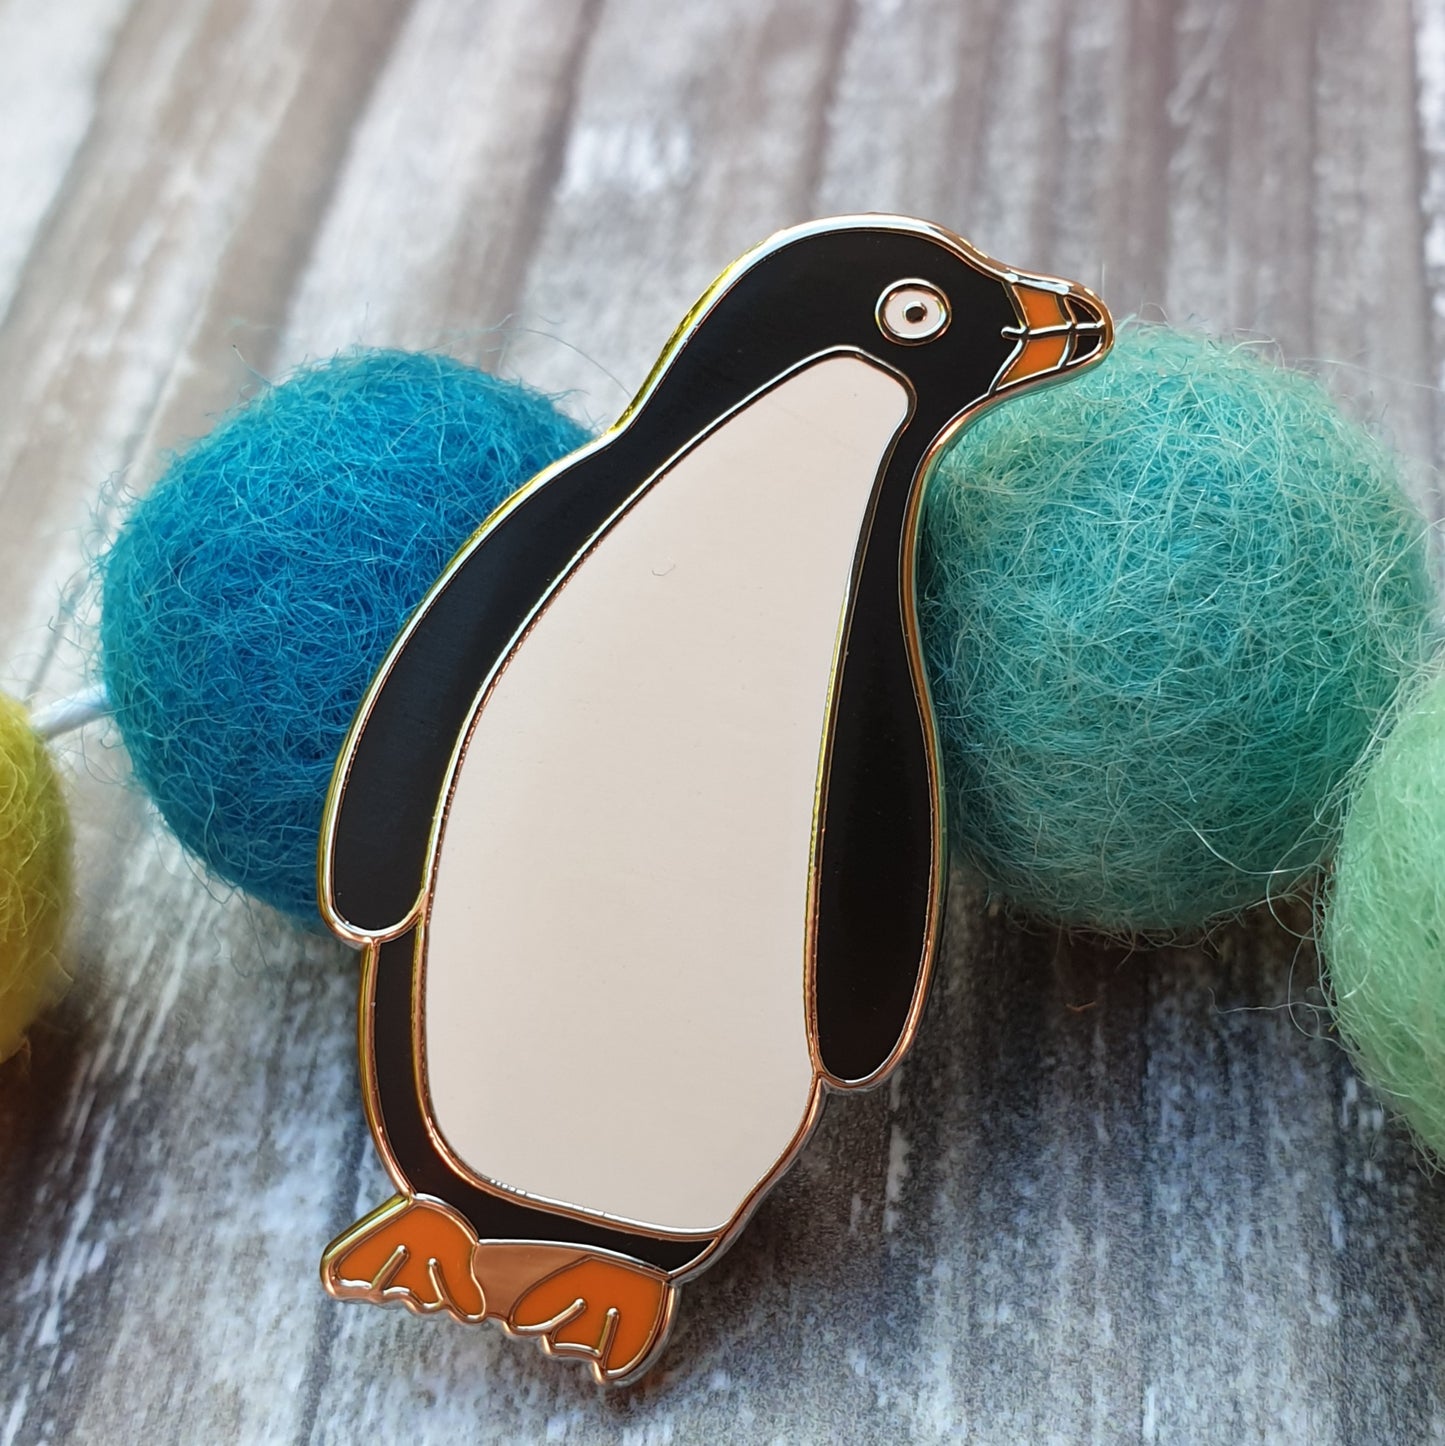 Adelie Penguin hard enamel brooch